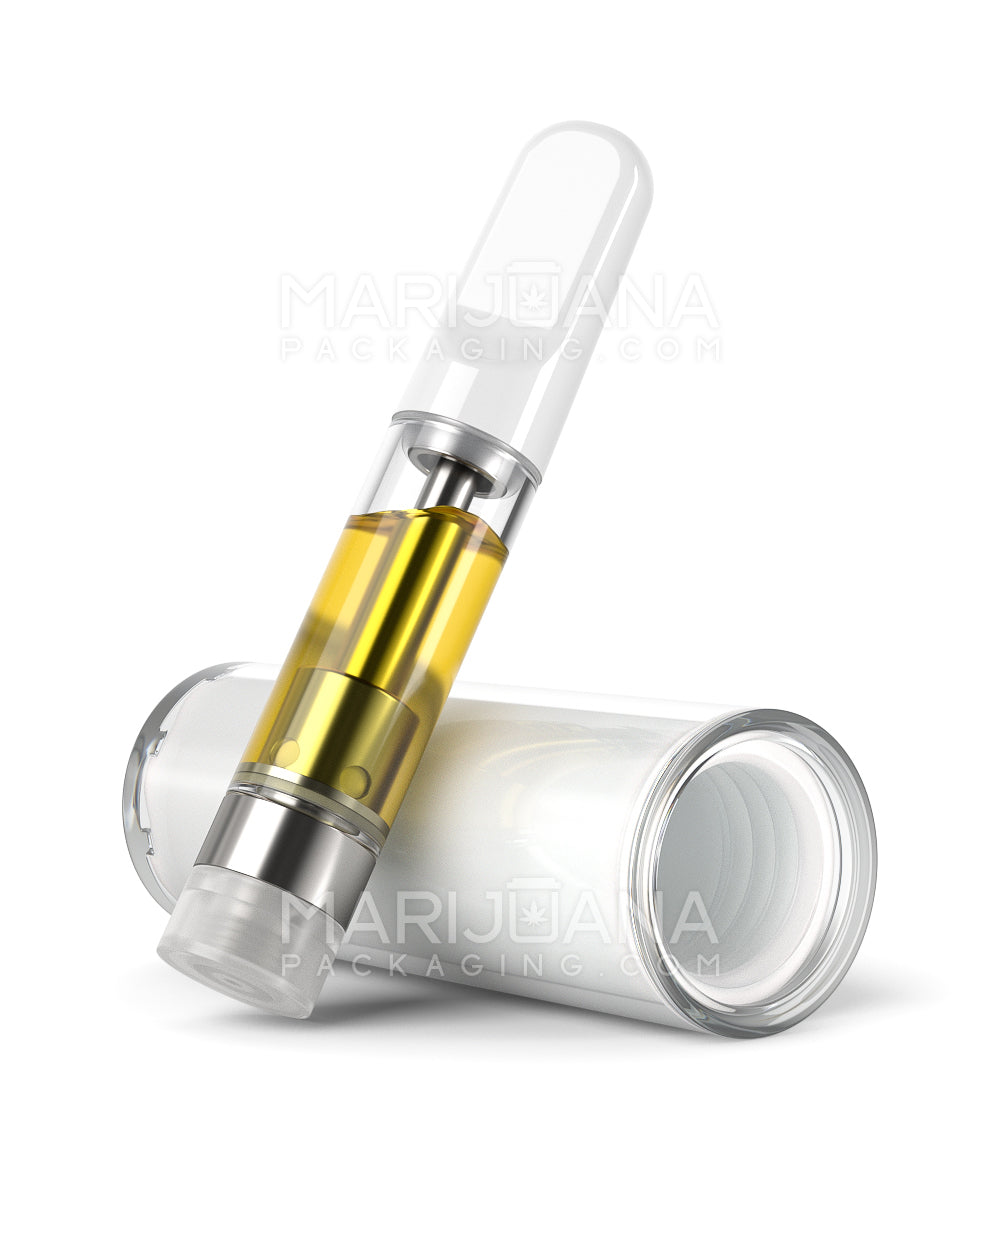 Child Resistant | Vape Cartridge Tube w/ White Plastic Insert | 80mm - White - 100 Count - 3